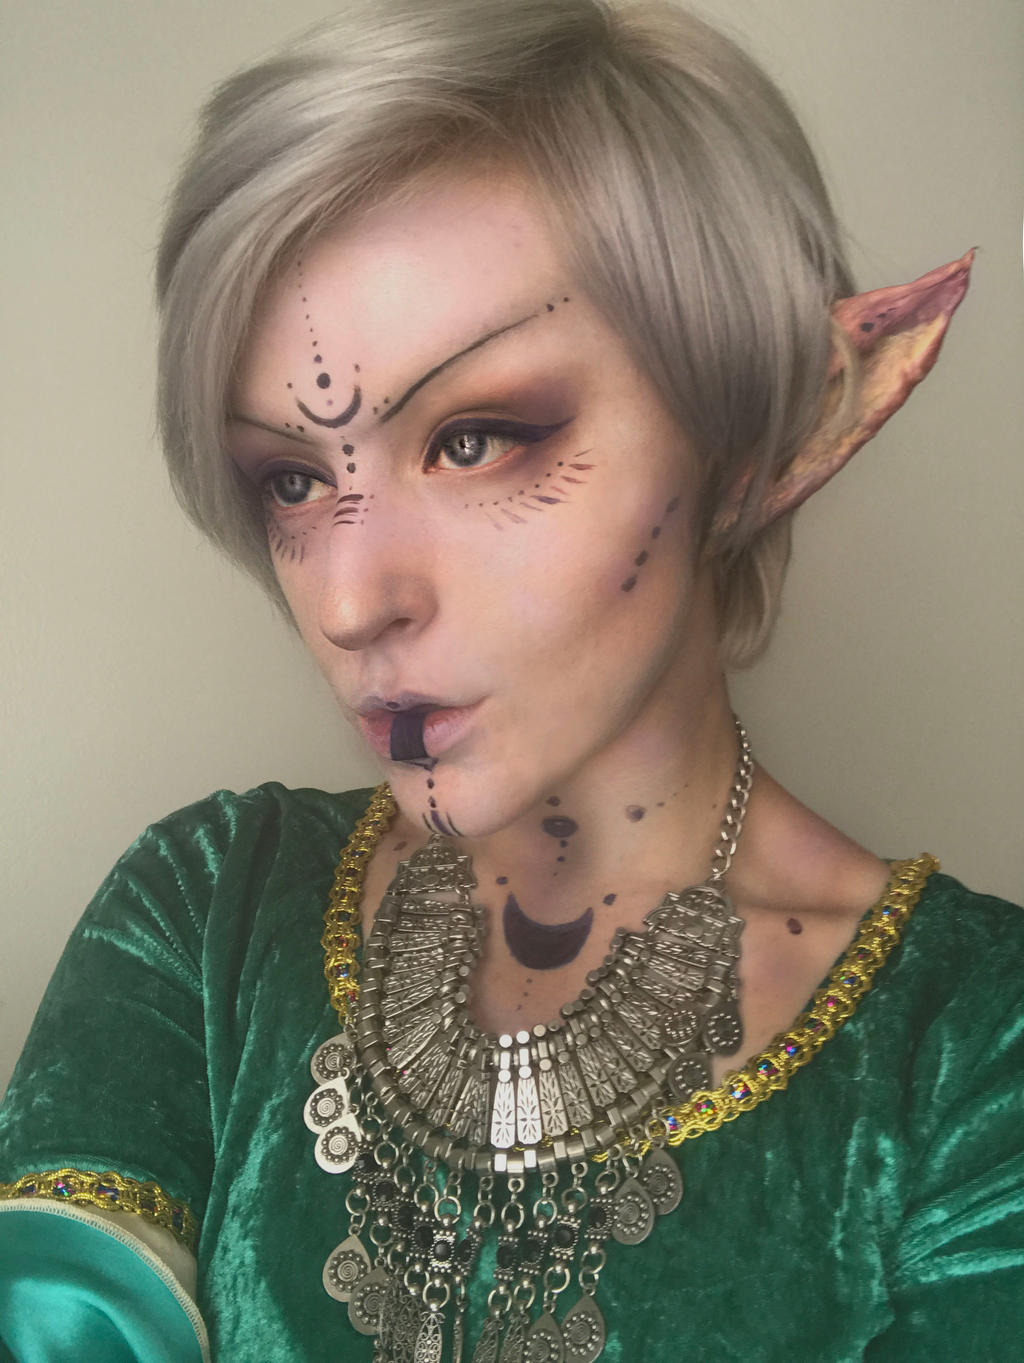 Dark elf makeup?